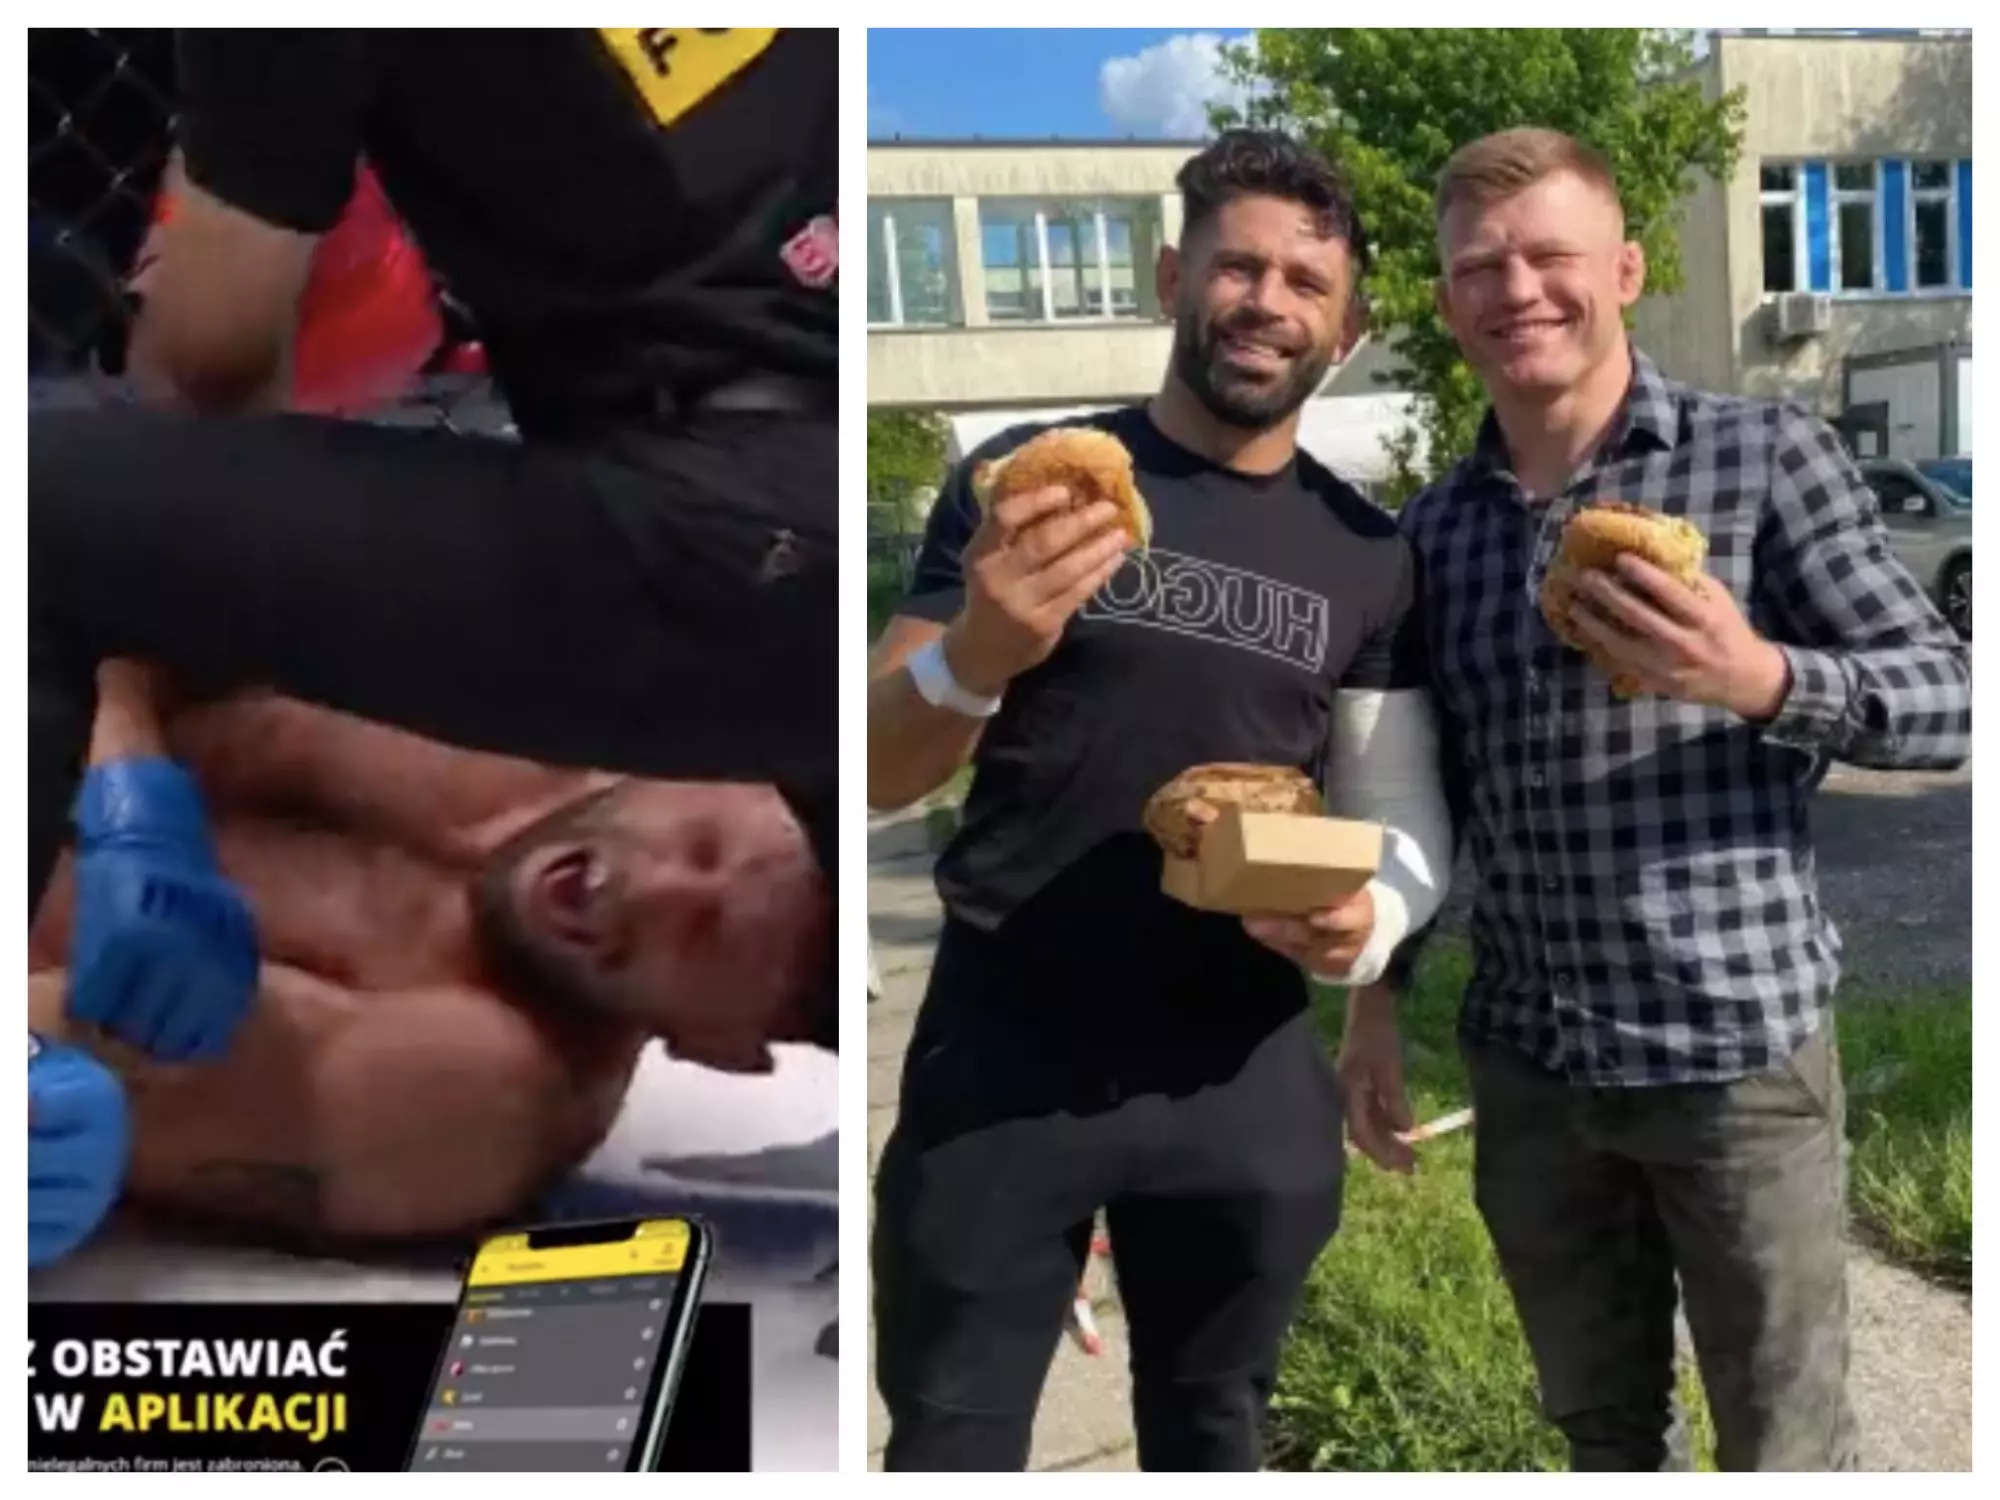 Zawodnik MMA przynosi przeciwnikowi burgera dwa dni po zwichnięciu ręki w środku meczu